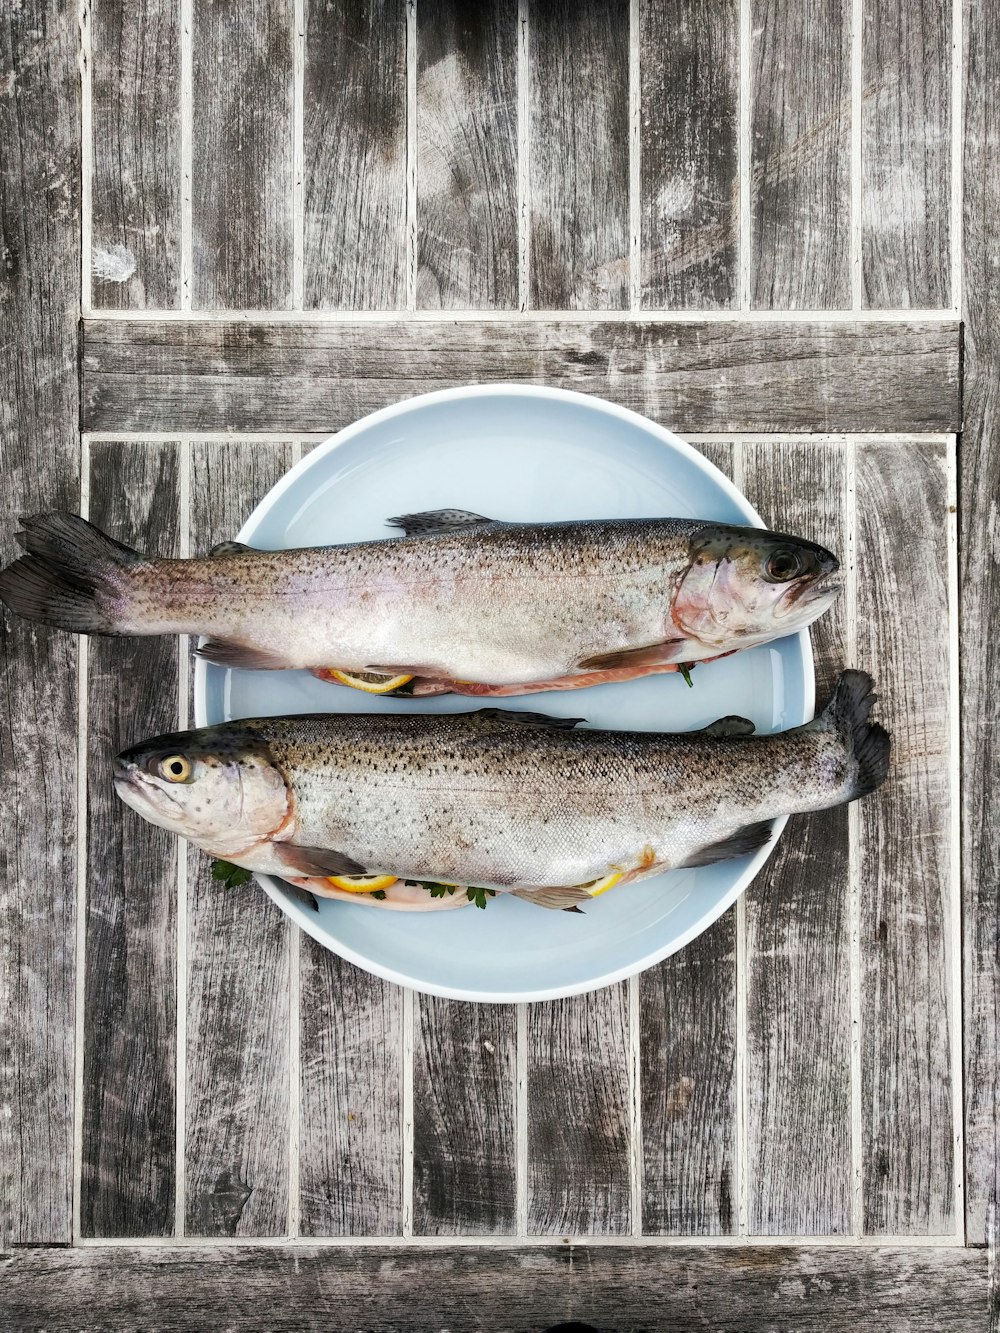 둥근 흰색 세라믹 접시에 두 마리의 은색 물고기